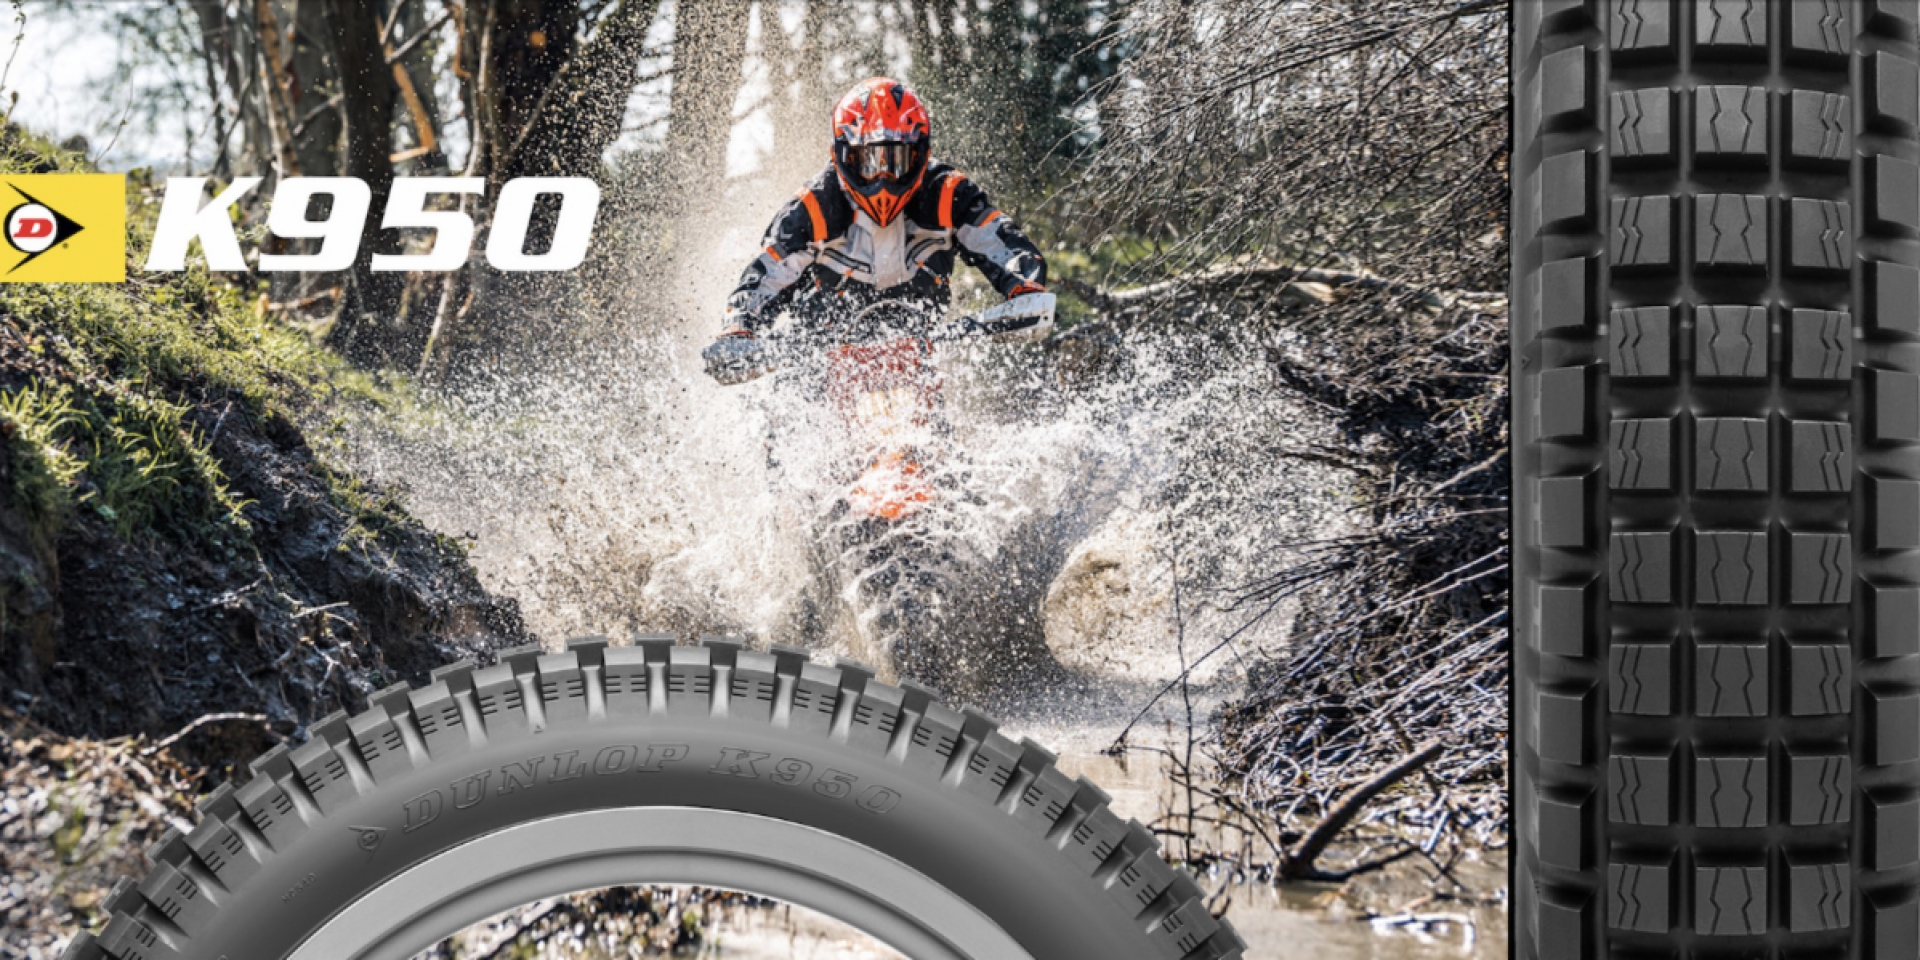 我全都要 ! Dunlop 全新推出K950 道路合法使用複合材質輪胎 